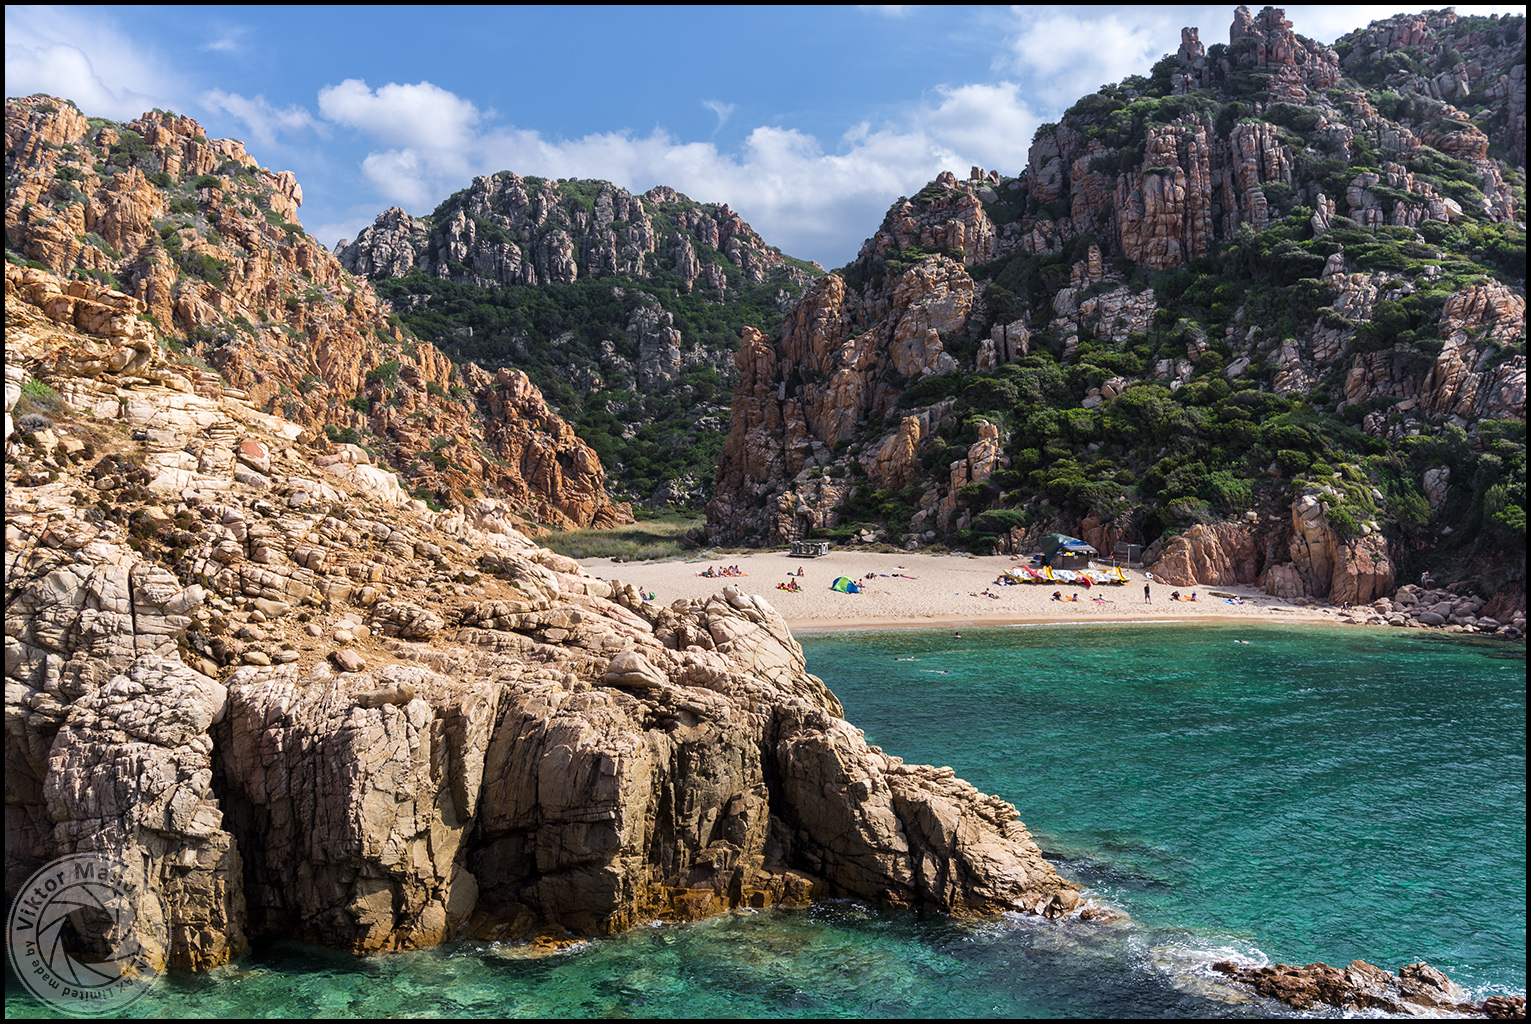 Photo of Spiaggia Li Cossi located in natural area